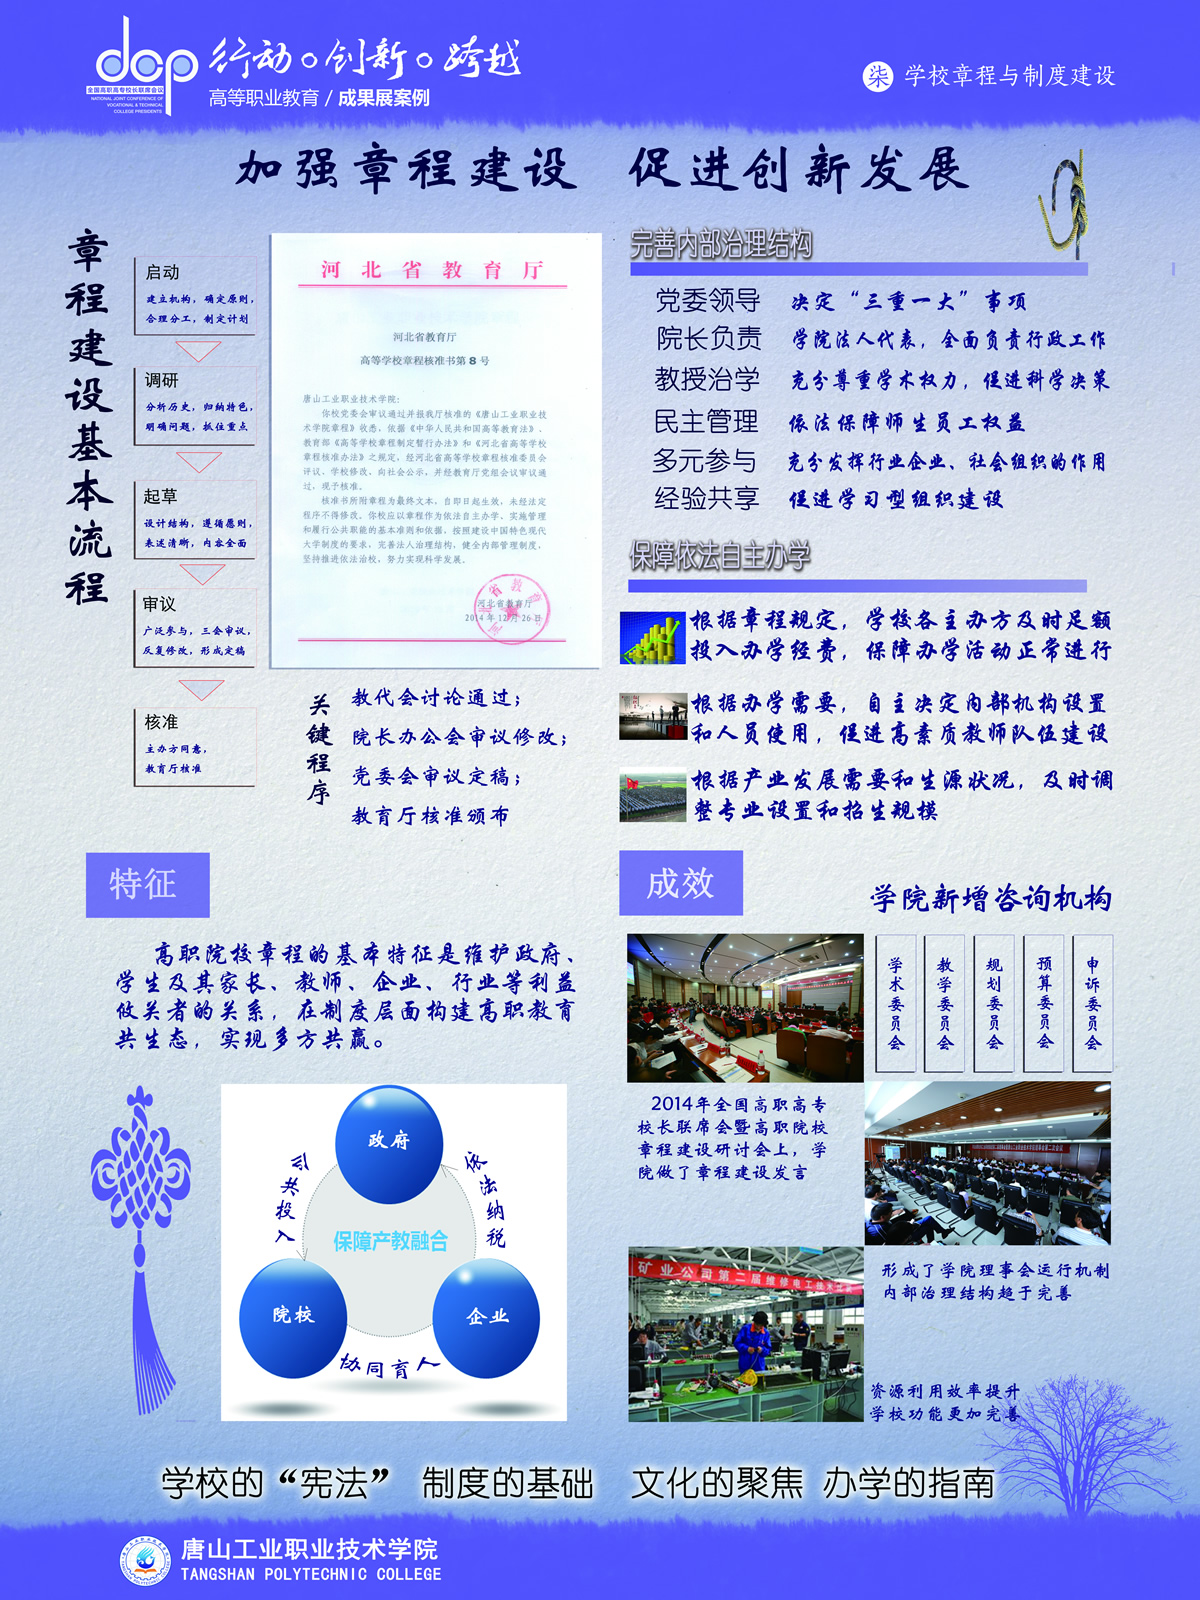 唐山工业职业技术学院章程.jpg